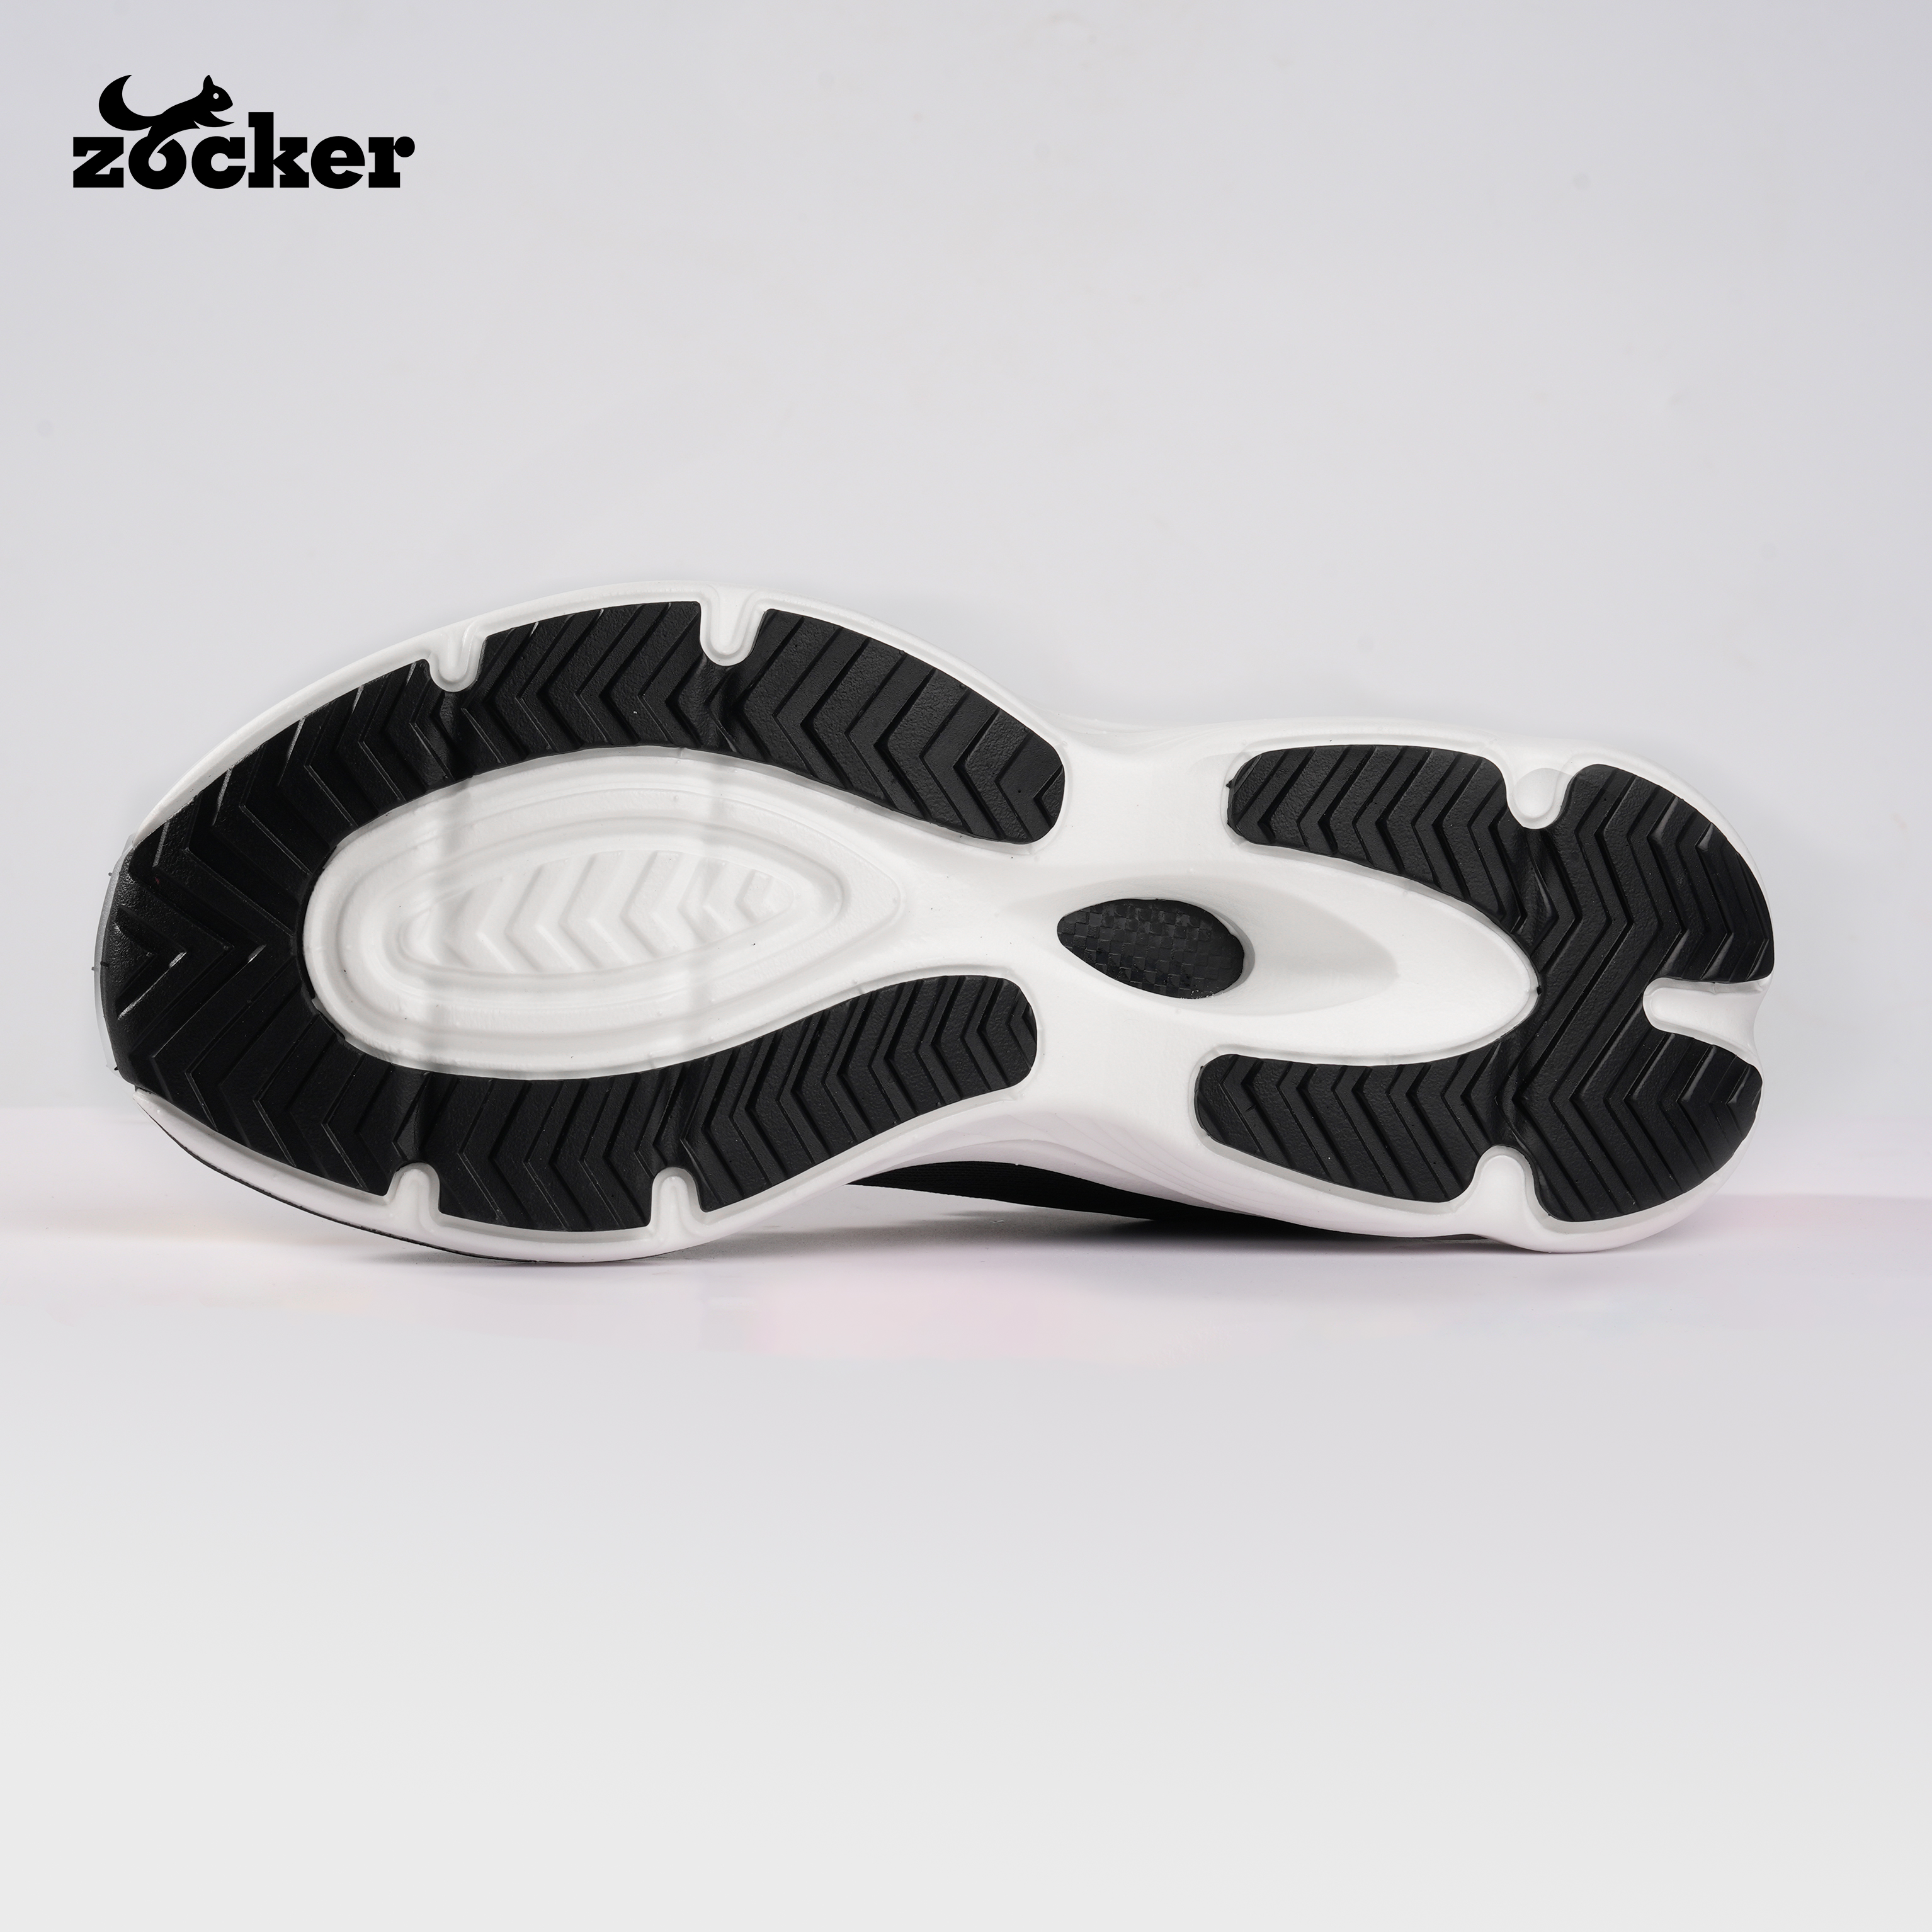 Giày Chạy Bộ Zocker Ultra Light Moon/Black - Công Nghệ Light Foam Premium Siêu Nhẹ - Siêu Êm - Siêu Nảy - Tặng kèm vệ sinh giày